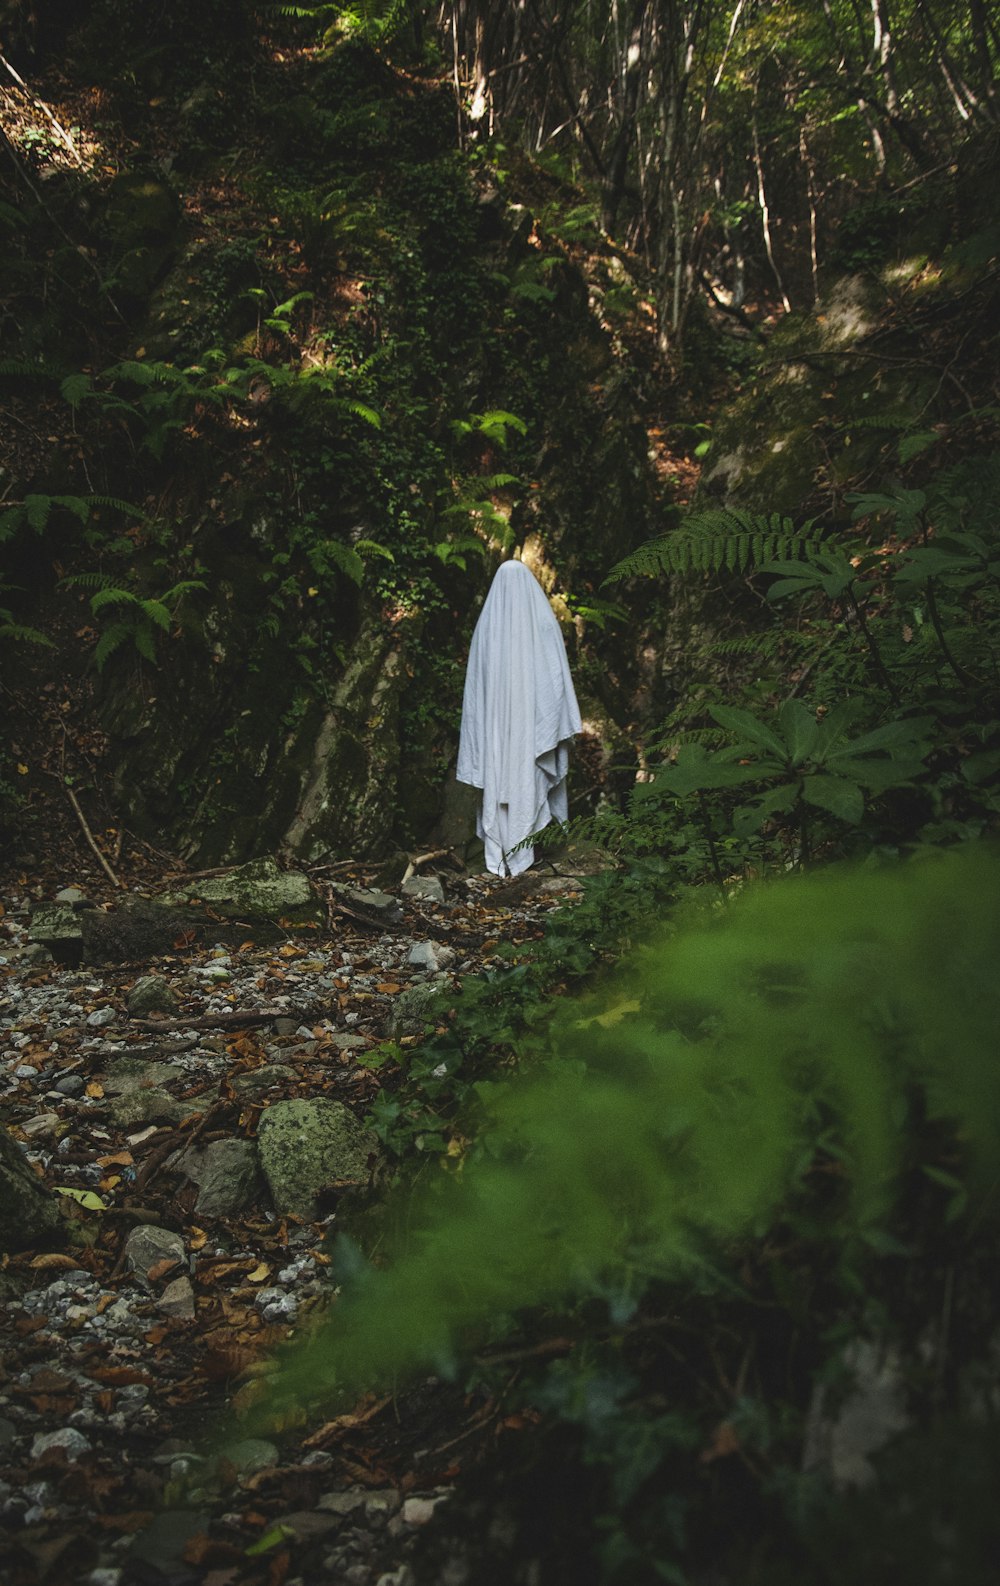 하얀 드레스를 입은 여자가 숲 속을 걷고 있다